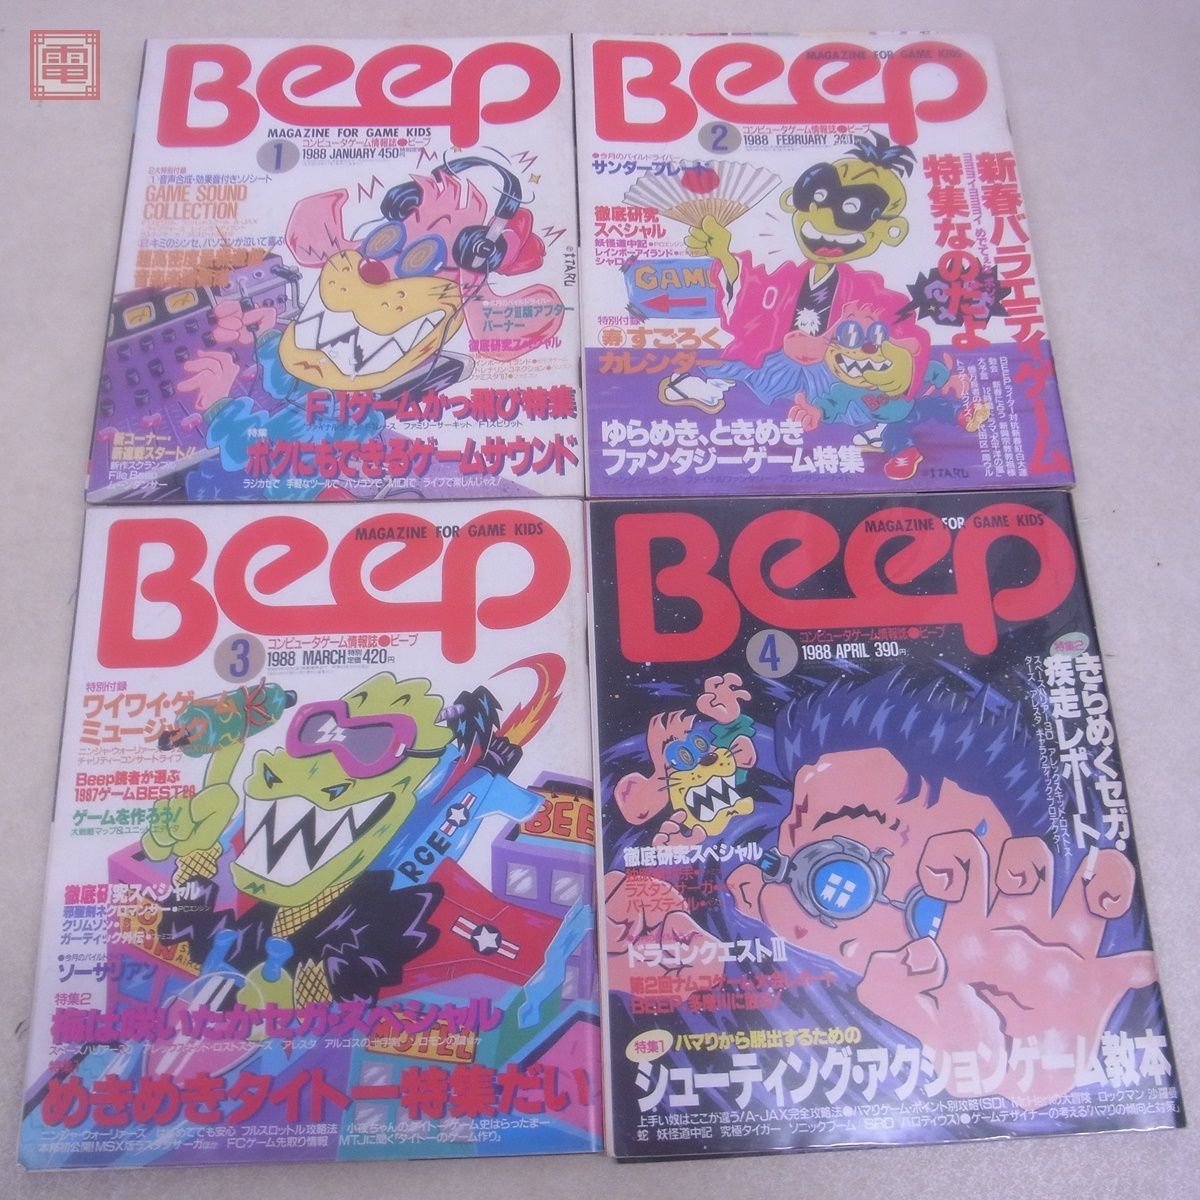  журнал компьютер игра информация журнал ежемесячный Beep 1988 год 1 месяц номер ~12 месяц номер через год .. открытка +sono сиденье есть итого 12 шт. комплект Be p Япония SoftBank [20